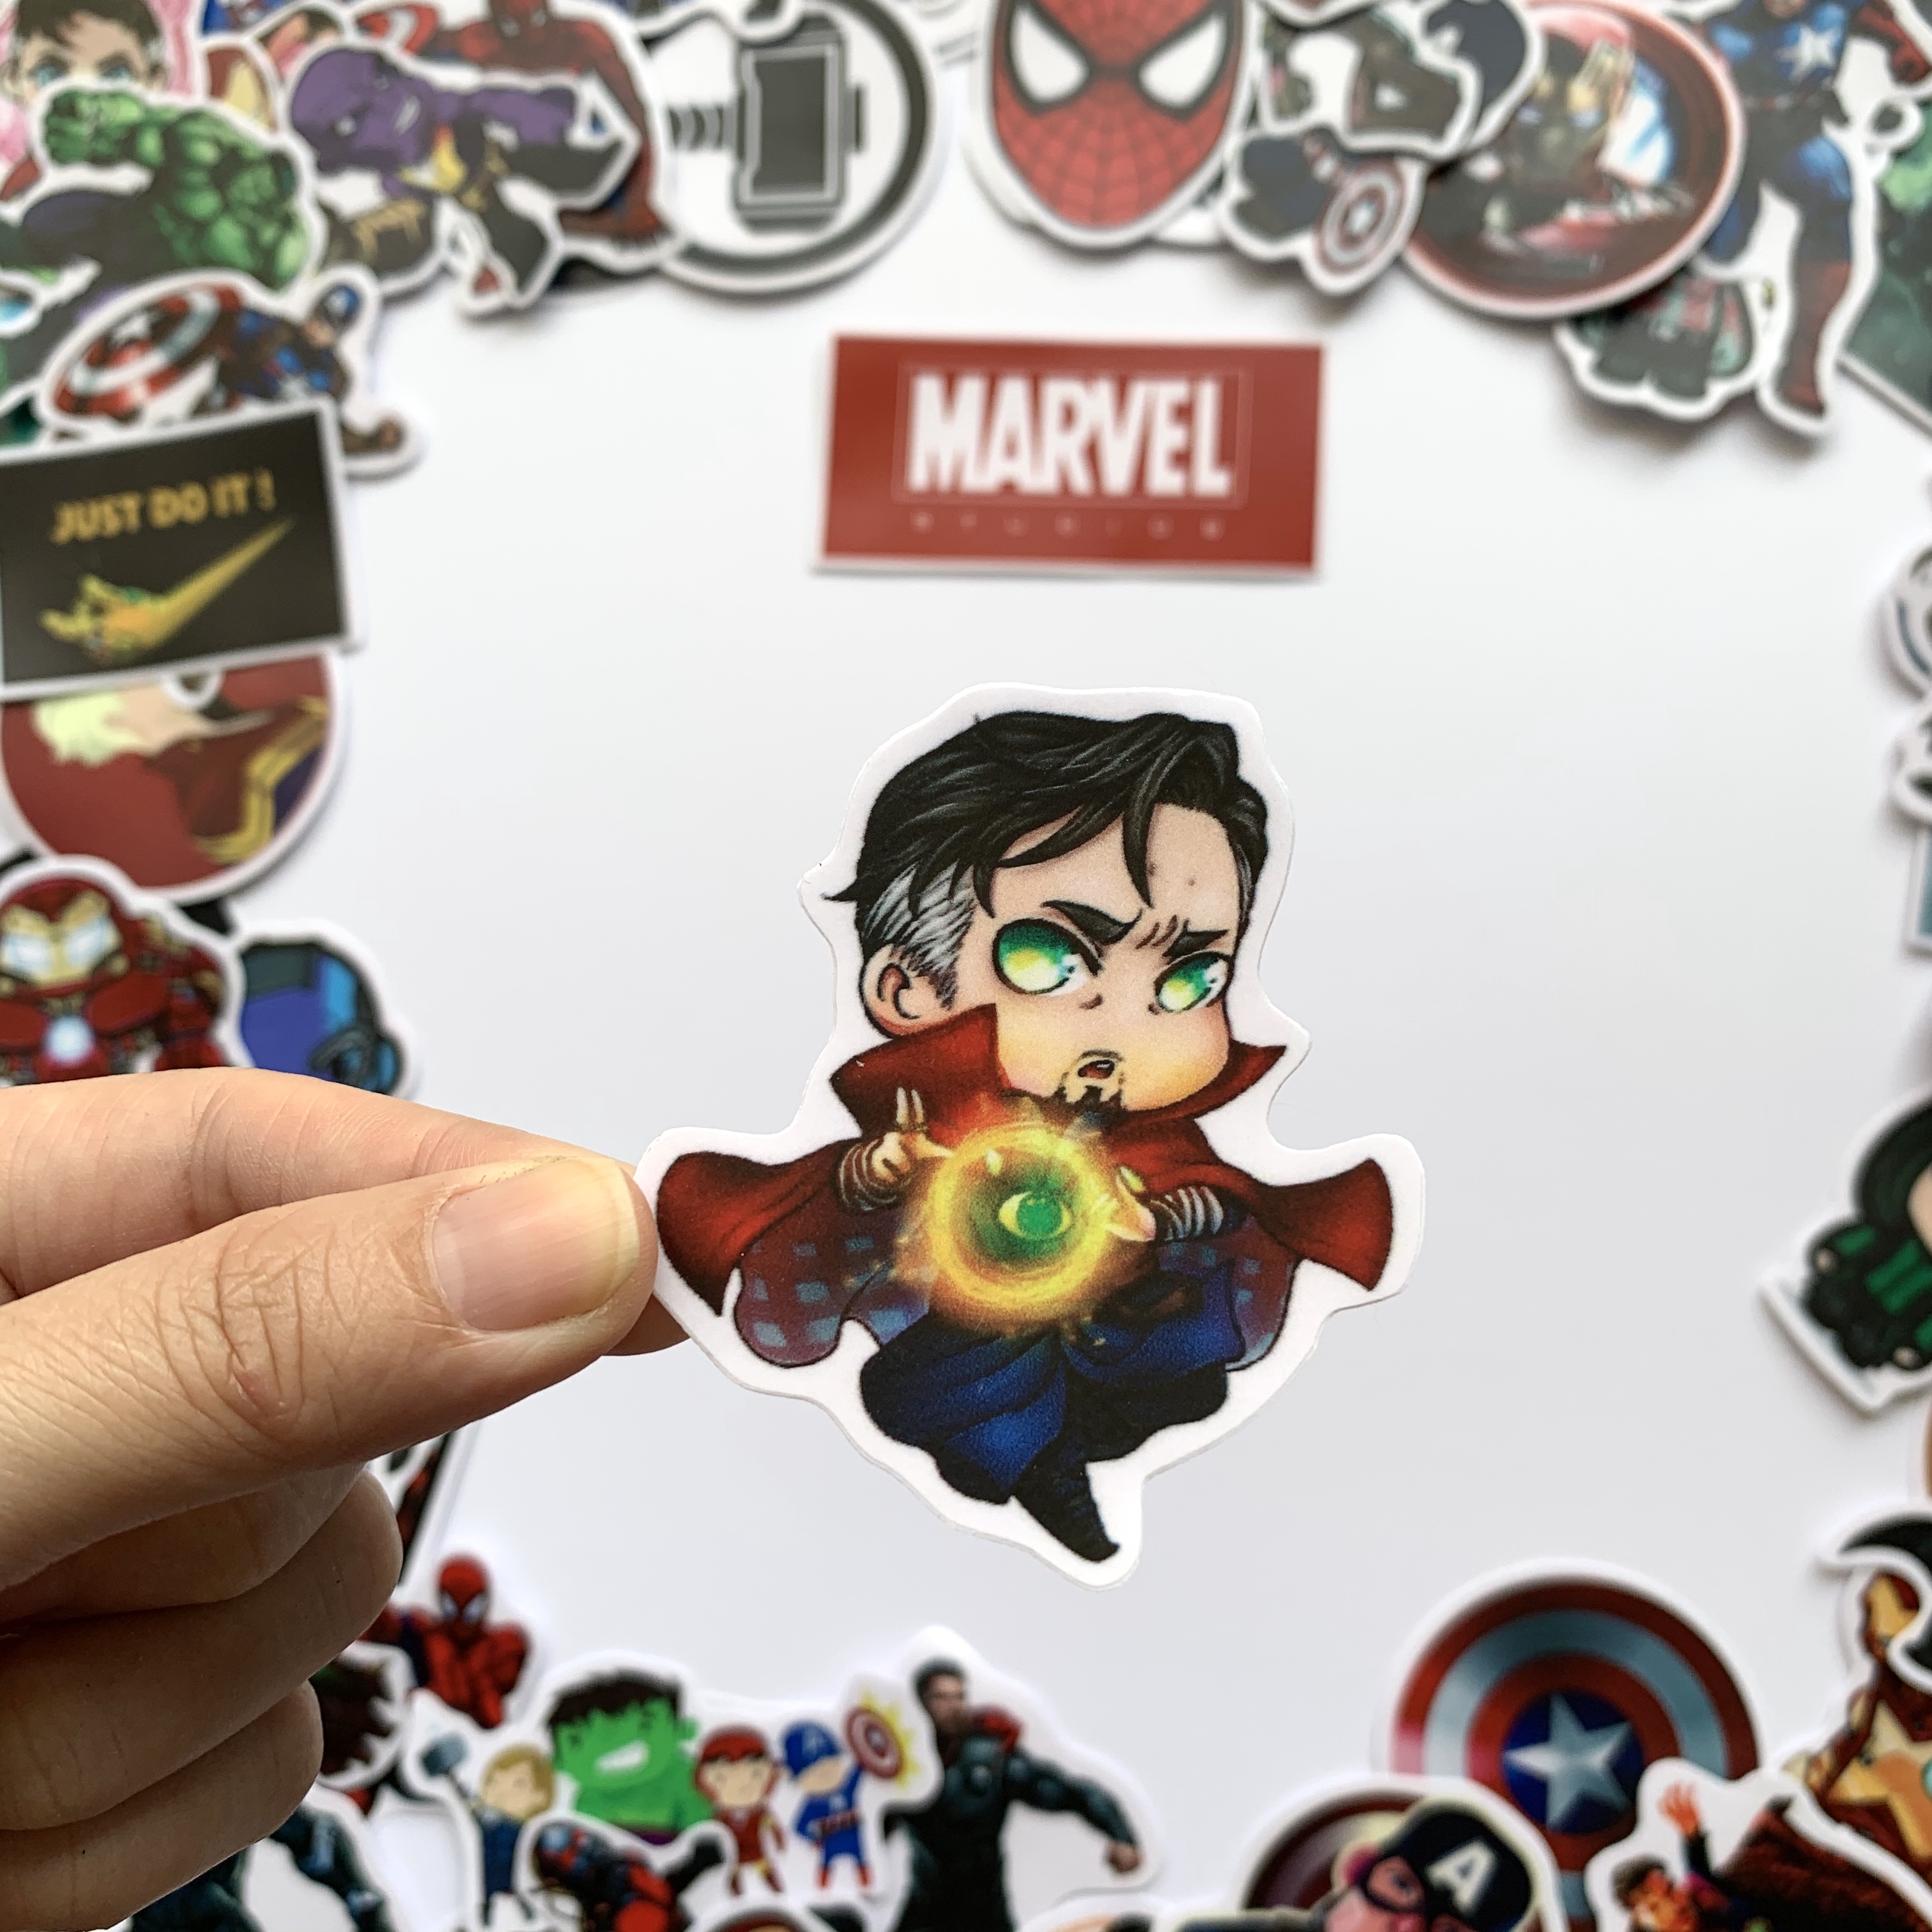 Sticker Marvel Siêu Anh Hùng - Chất Liệu PVC Chất Lượng Cao Chống Nước - Kích Thước 4-8cm